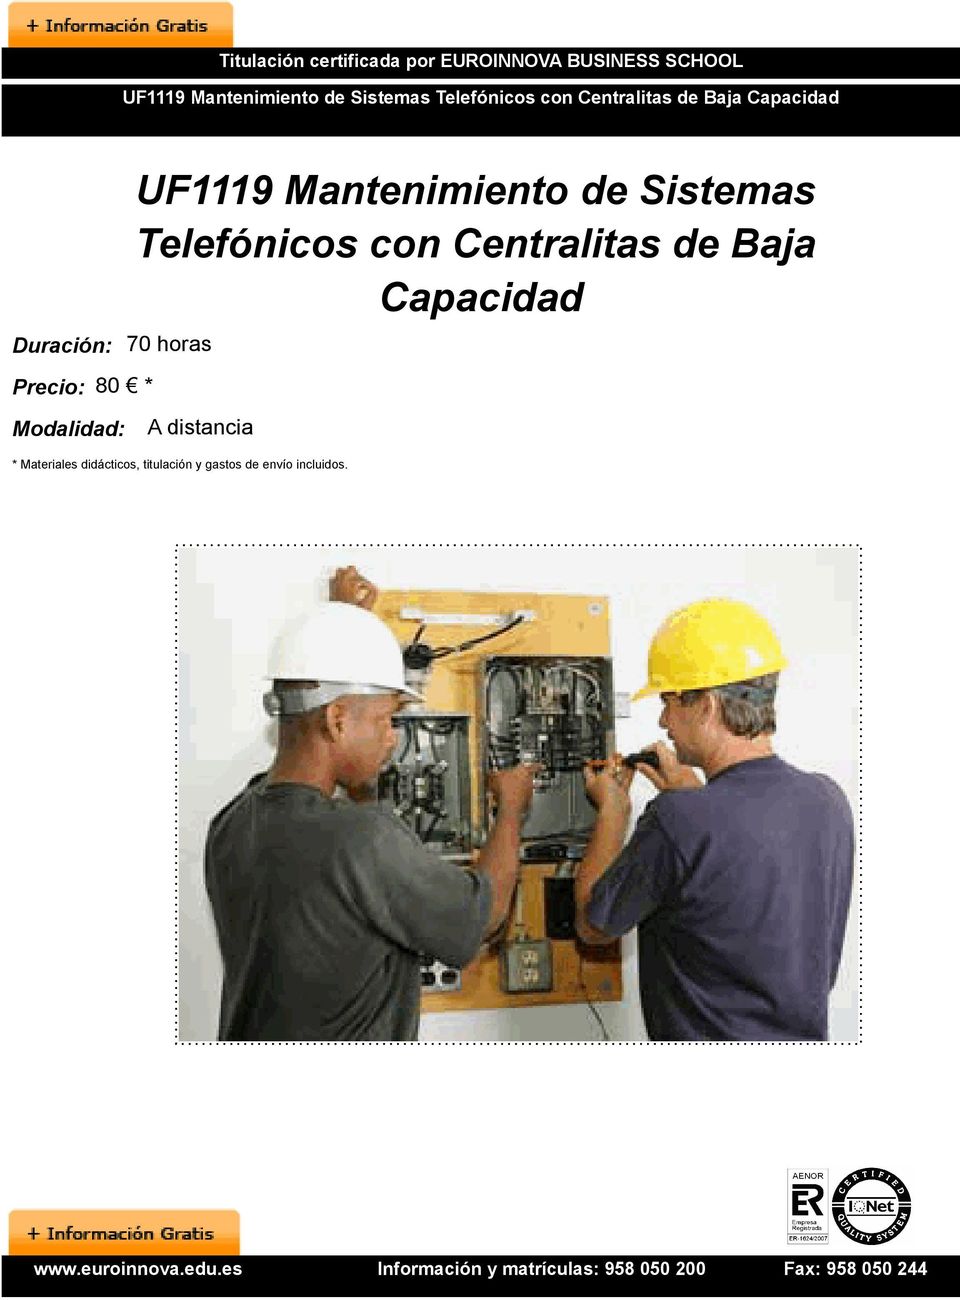 80 * UF1119 Mantenimiento de Sistemas Telefónicos con Centralitas de Baja